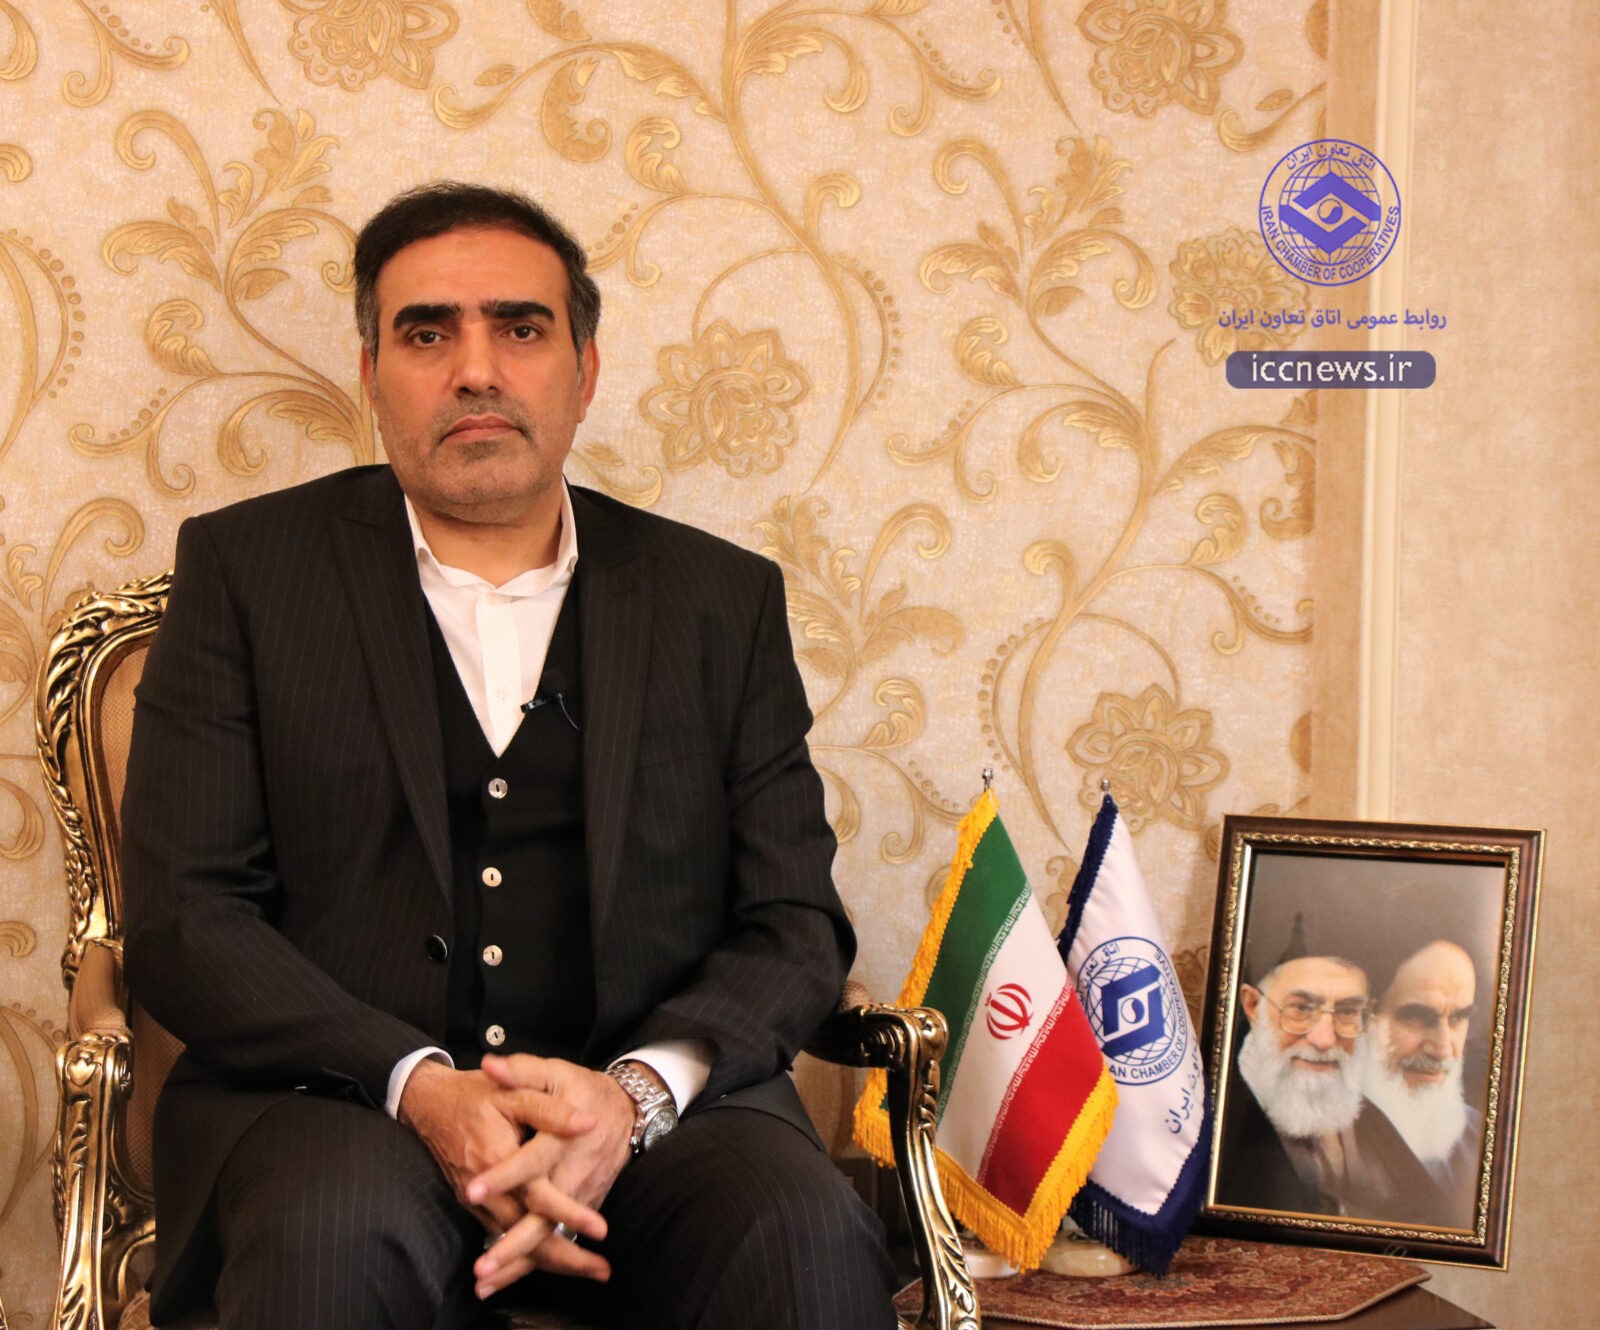 استراتژی اتاق تعاون ایران اعلام شد/ حمایت از تولید داخلی در دستور کار